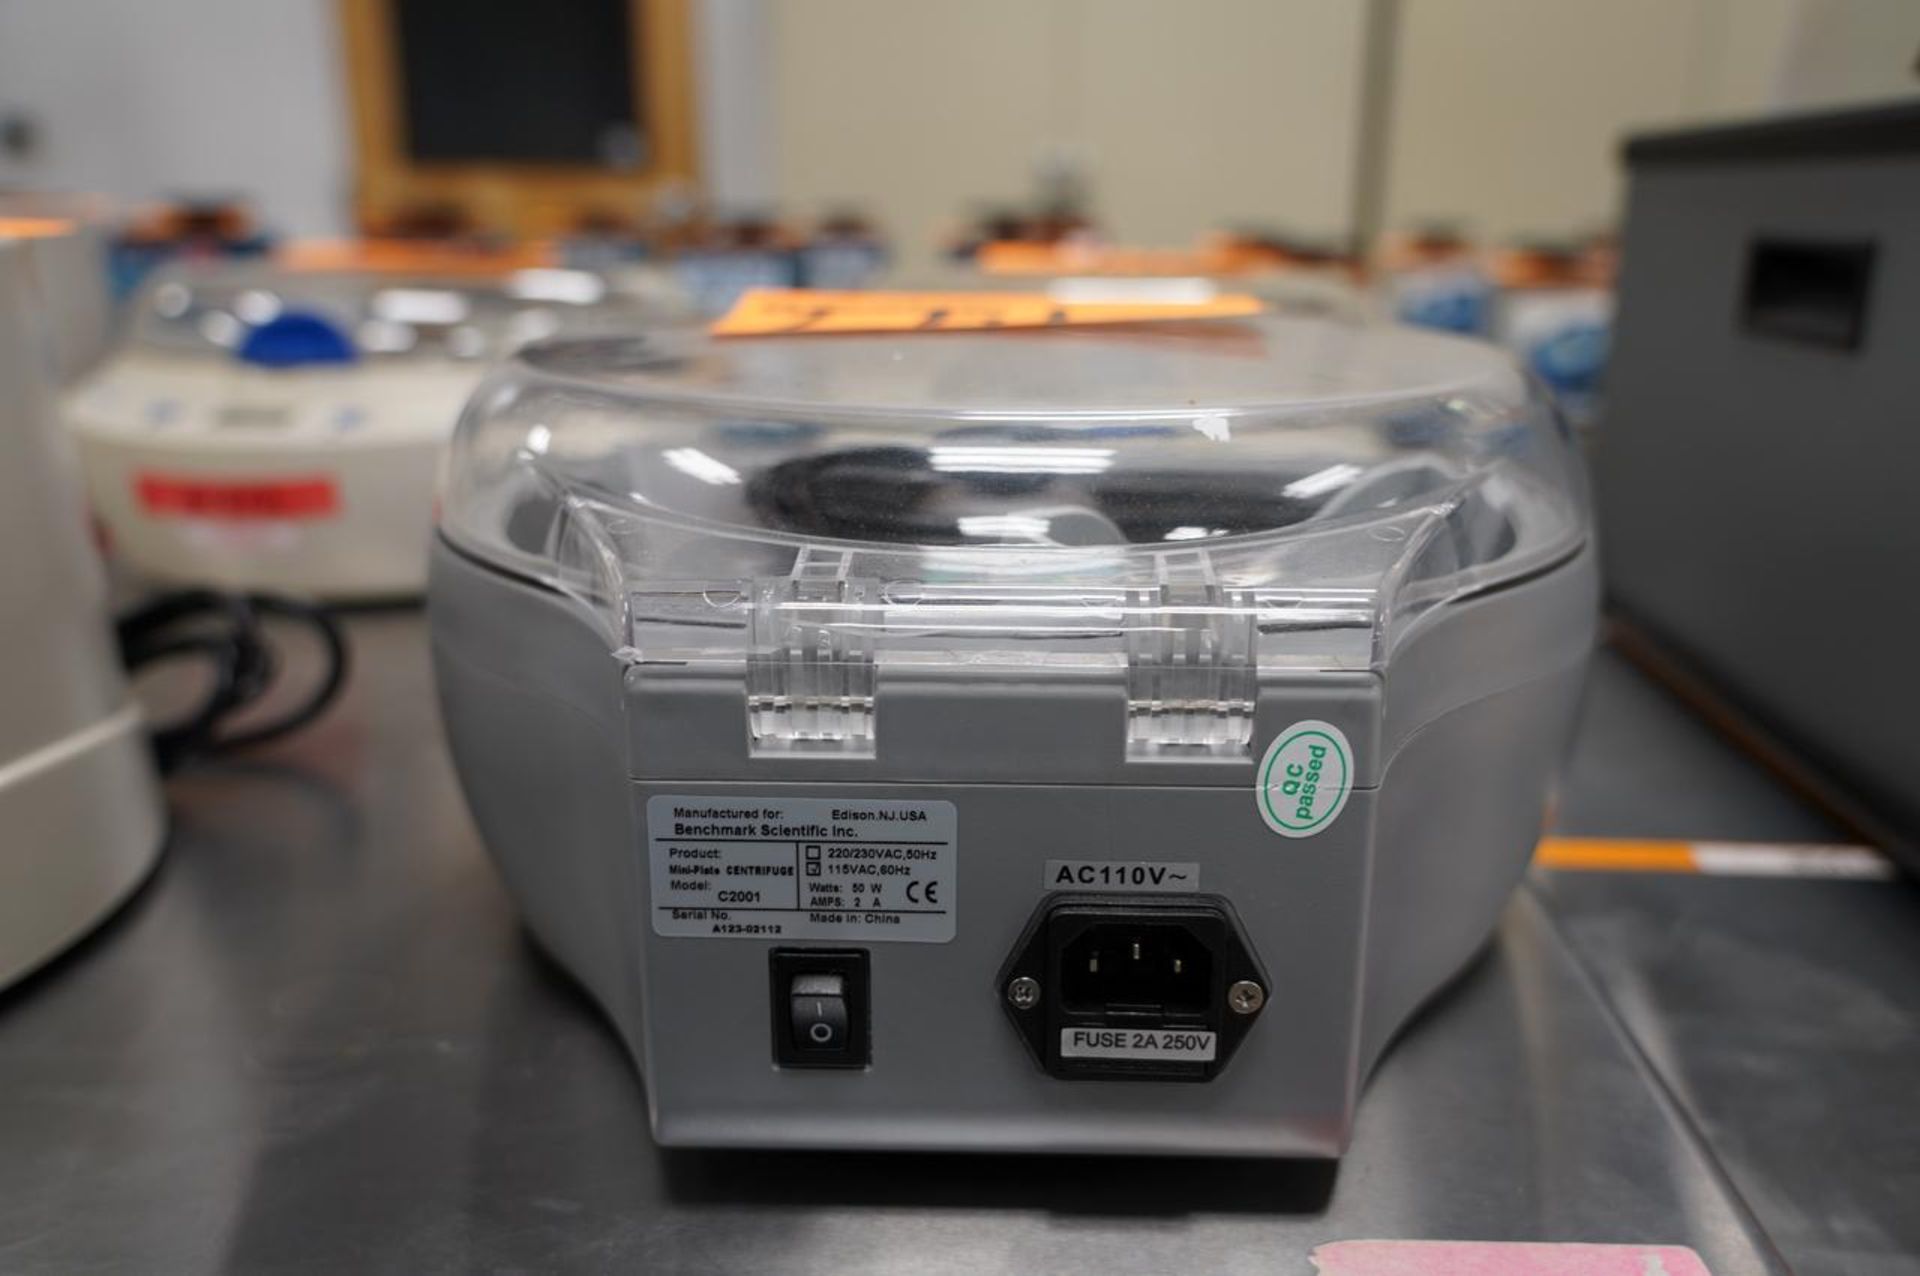 VWR C2001 Platefuge Microplate Centrifuge - Image 4 of 5